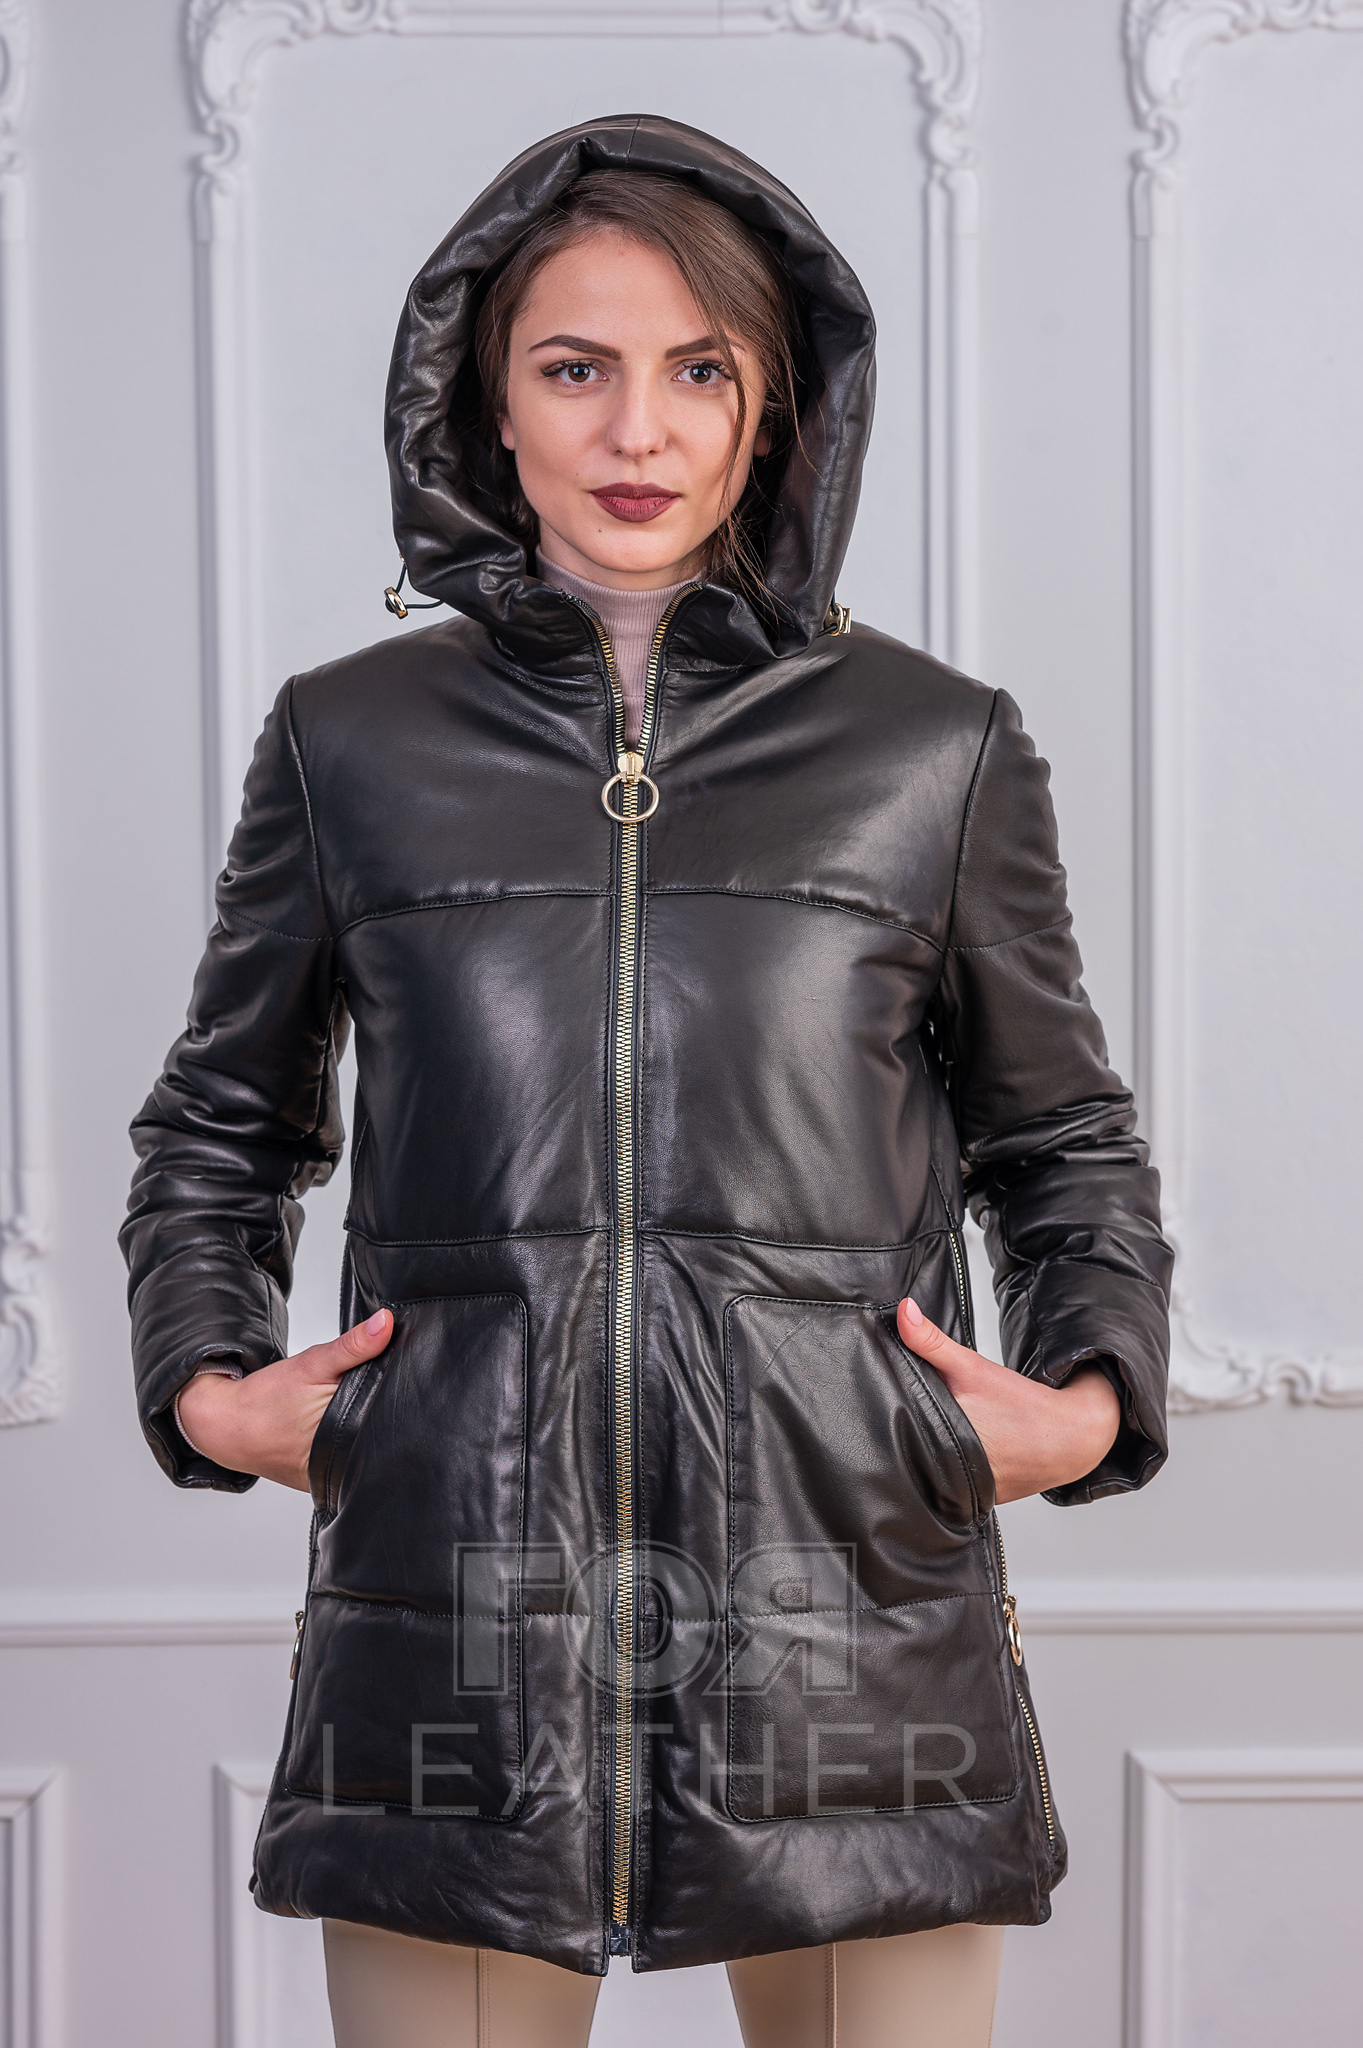 Дамска кожена парка от ГОЯ Leather. Нов модел дамска кожена парка изработена от 100% висококачествена агнешка кожа. Изключително лека и топла дреха с модерна визия.